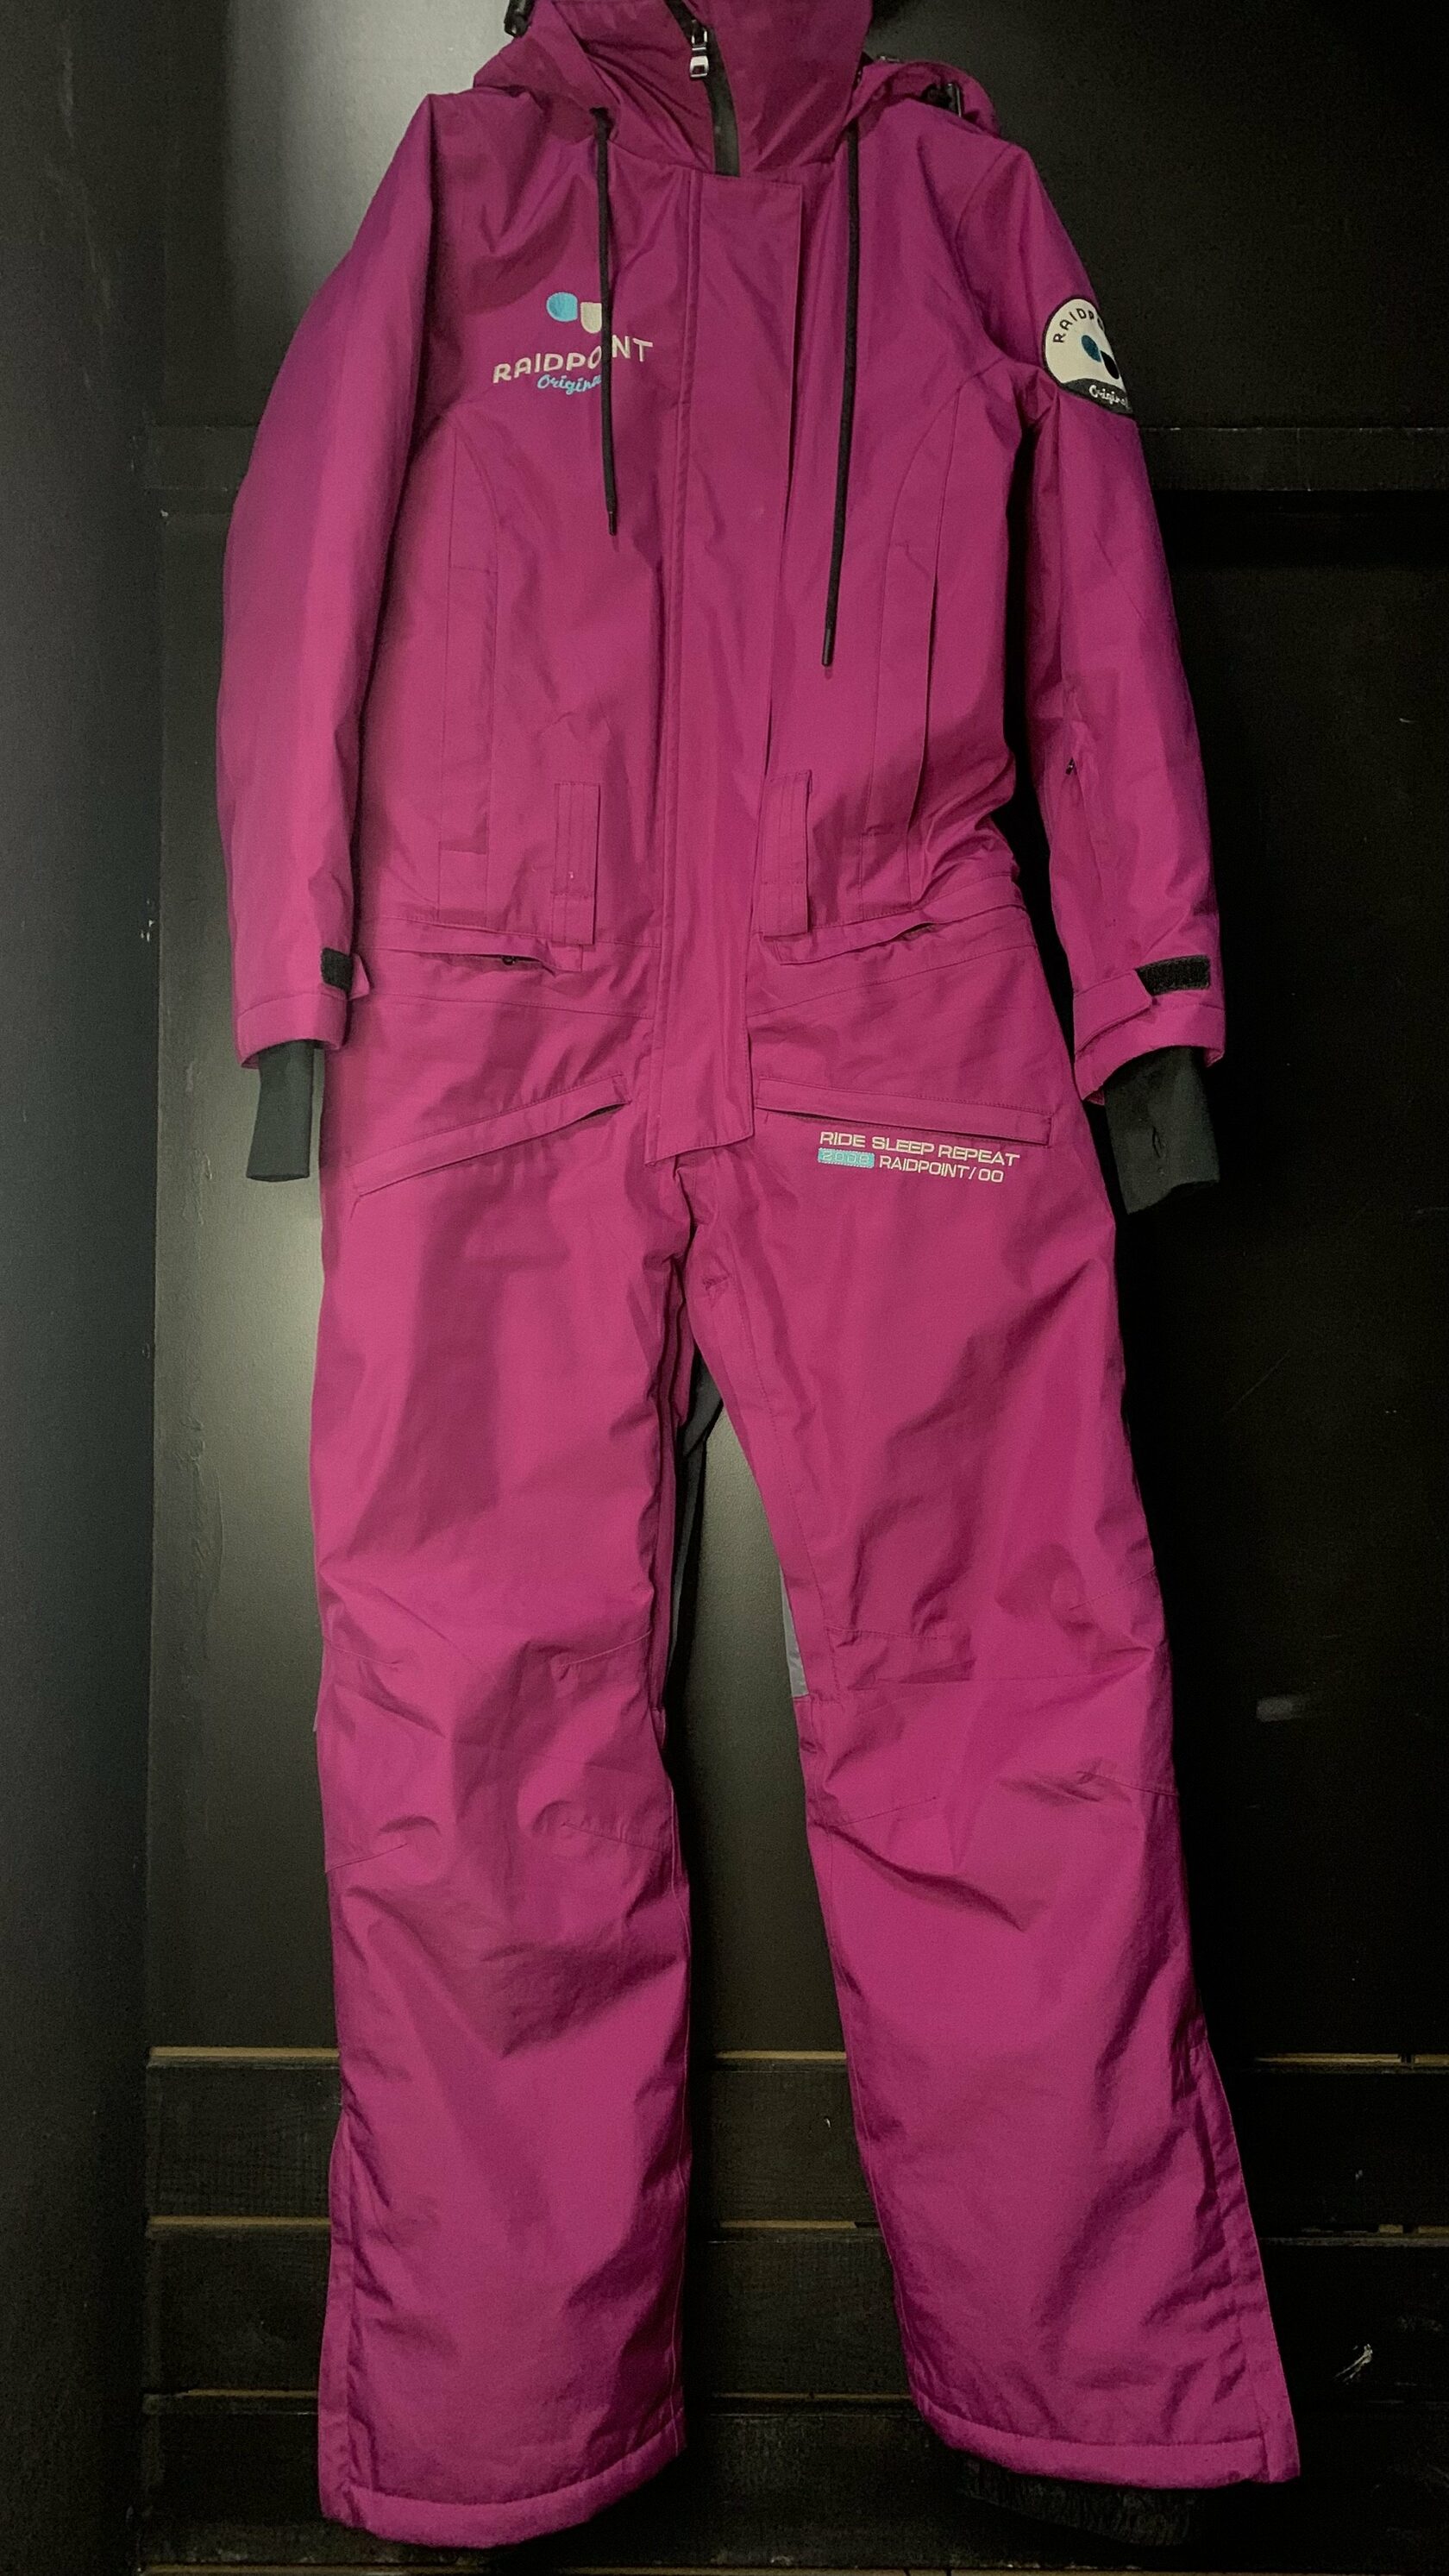 Прокат горнолыжной одежды в Омске - Комбинезон горнолыжный Raidpoint, вишневый